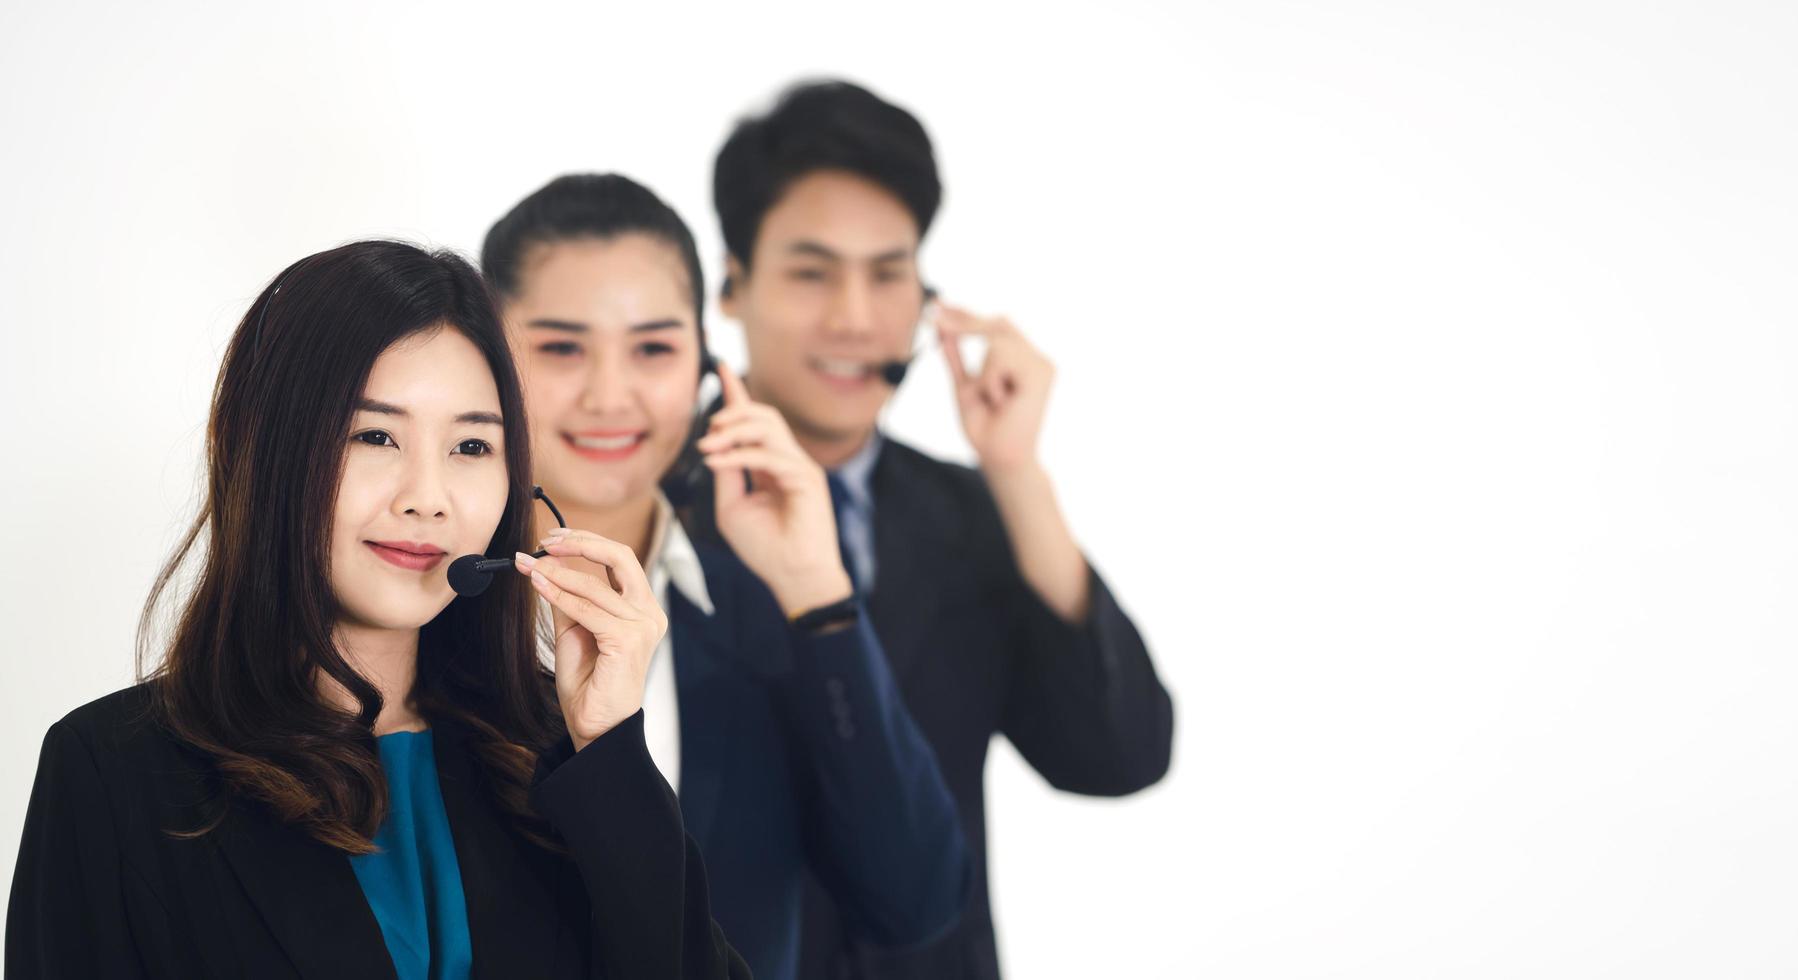 porträt des positiven lächelns des jungen geschäftspersonals der asiatischen callcenter-teamfrau und des mannes foto